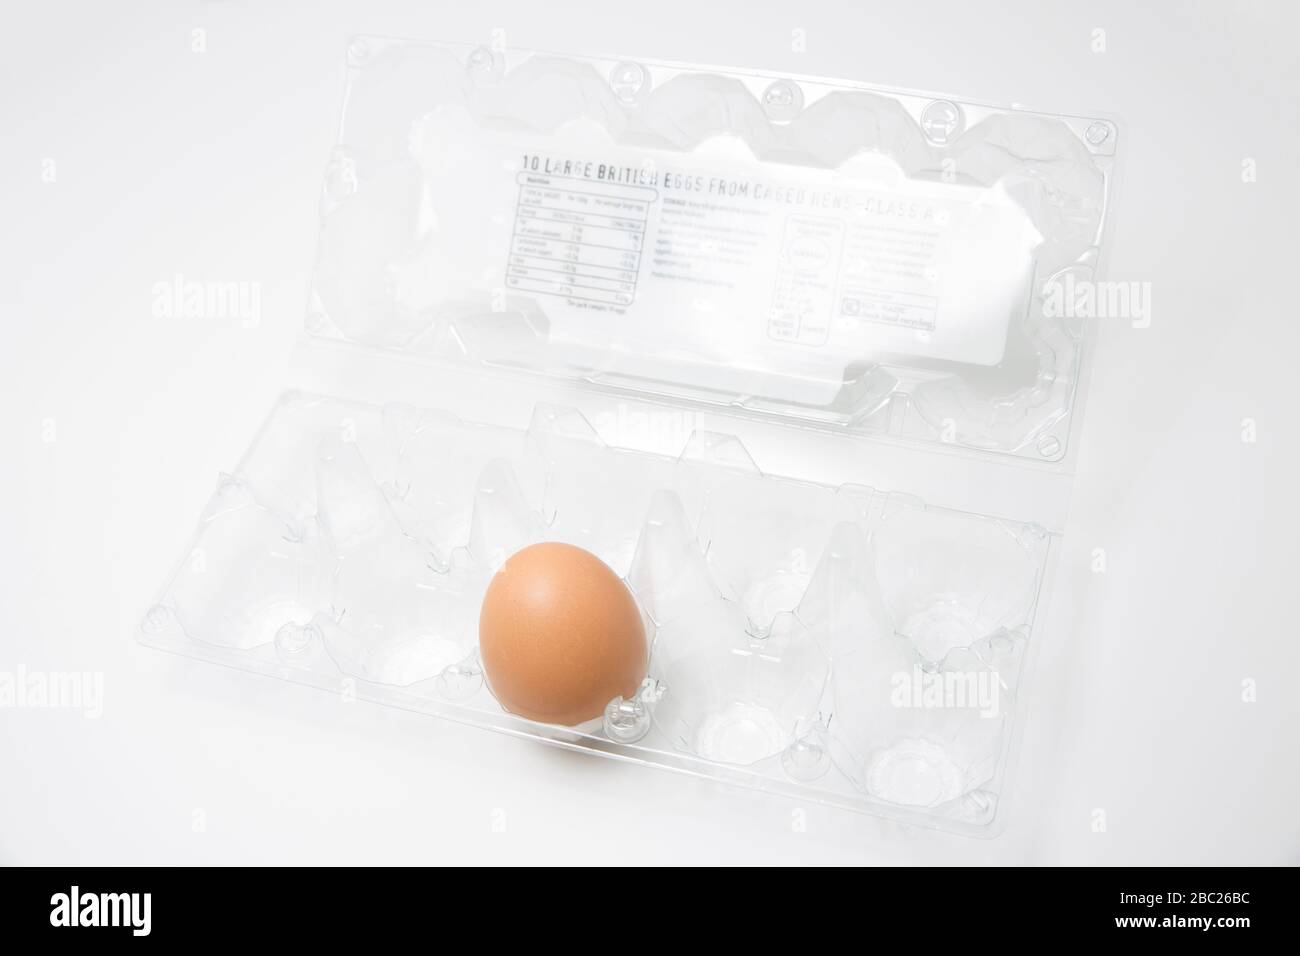 Un unico uovo crudo di una gallina in una scatola d'uovo di plastica. Le uova erano uno di parecchi articoli che hanno venduto rapidamente fuori durante l'epidemia di Coronavirus. Fare Foto Stock